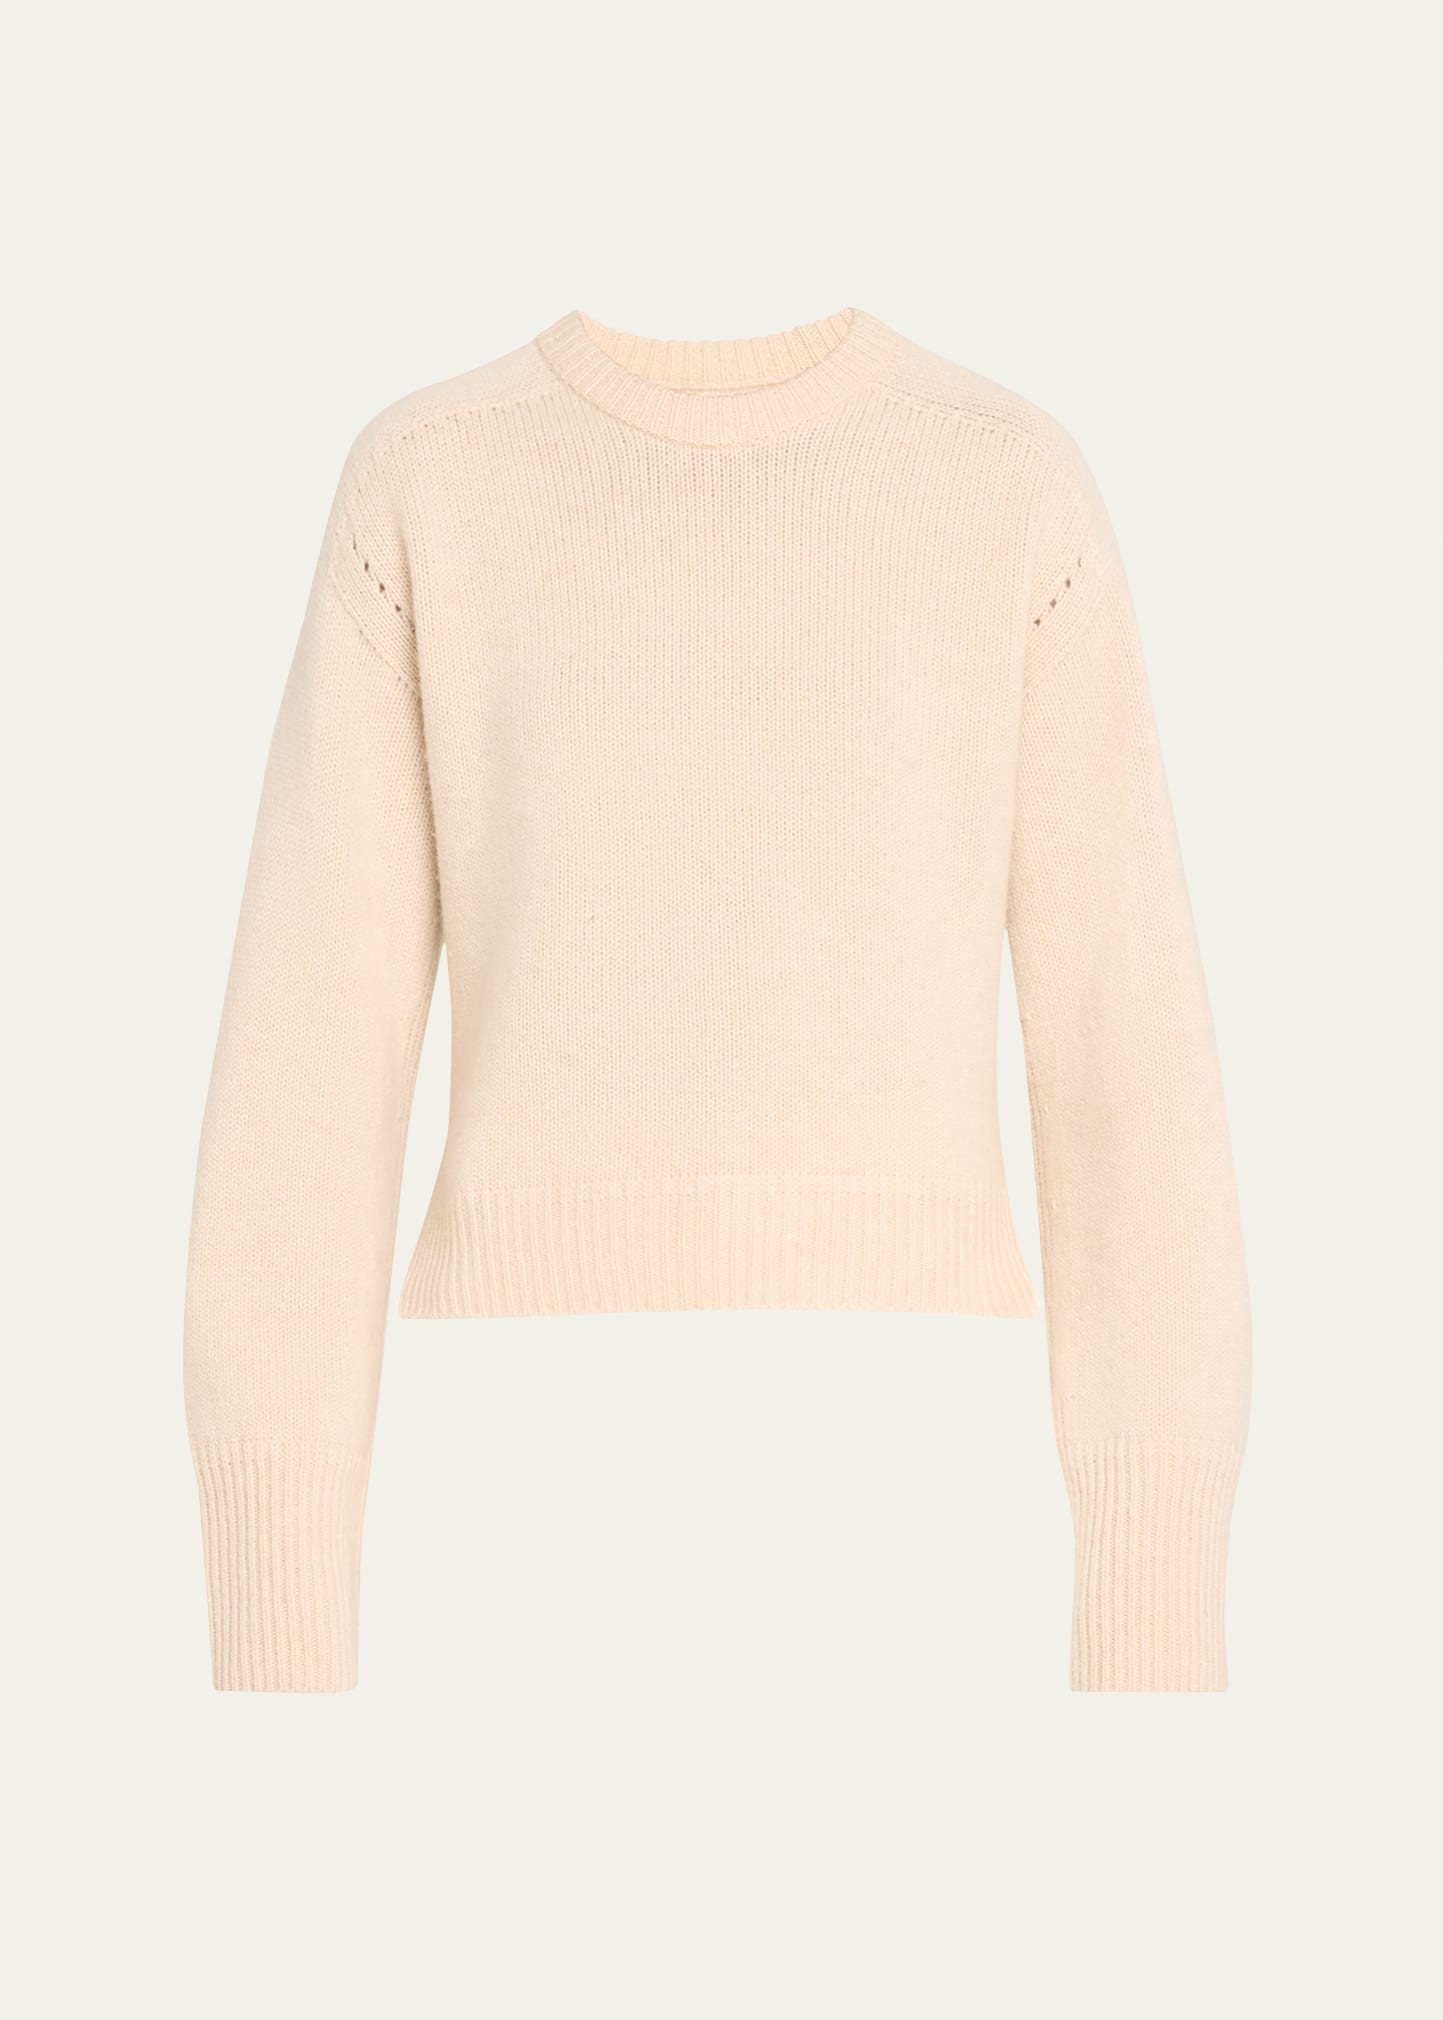 A.l.c Asher Cashmere Sweater In Latte